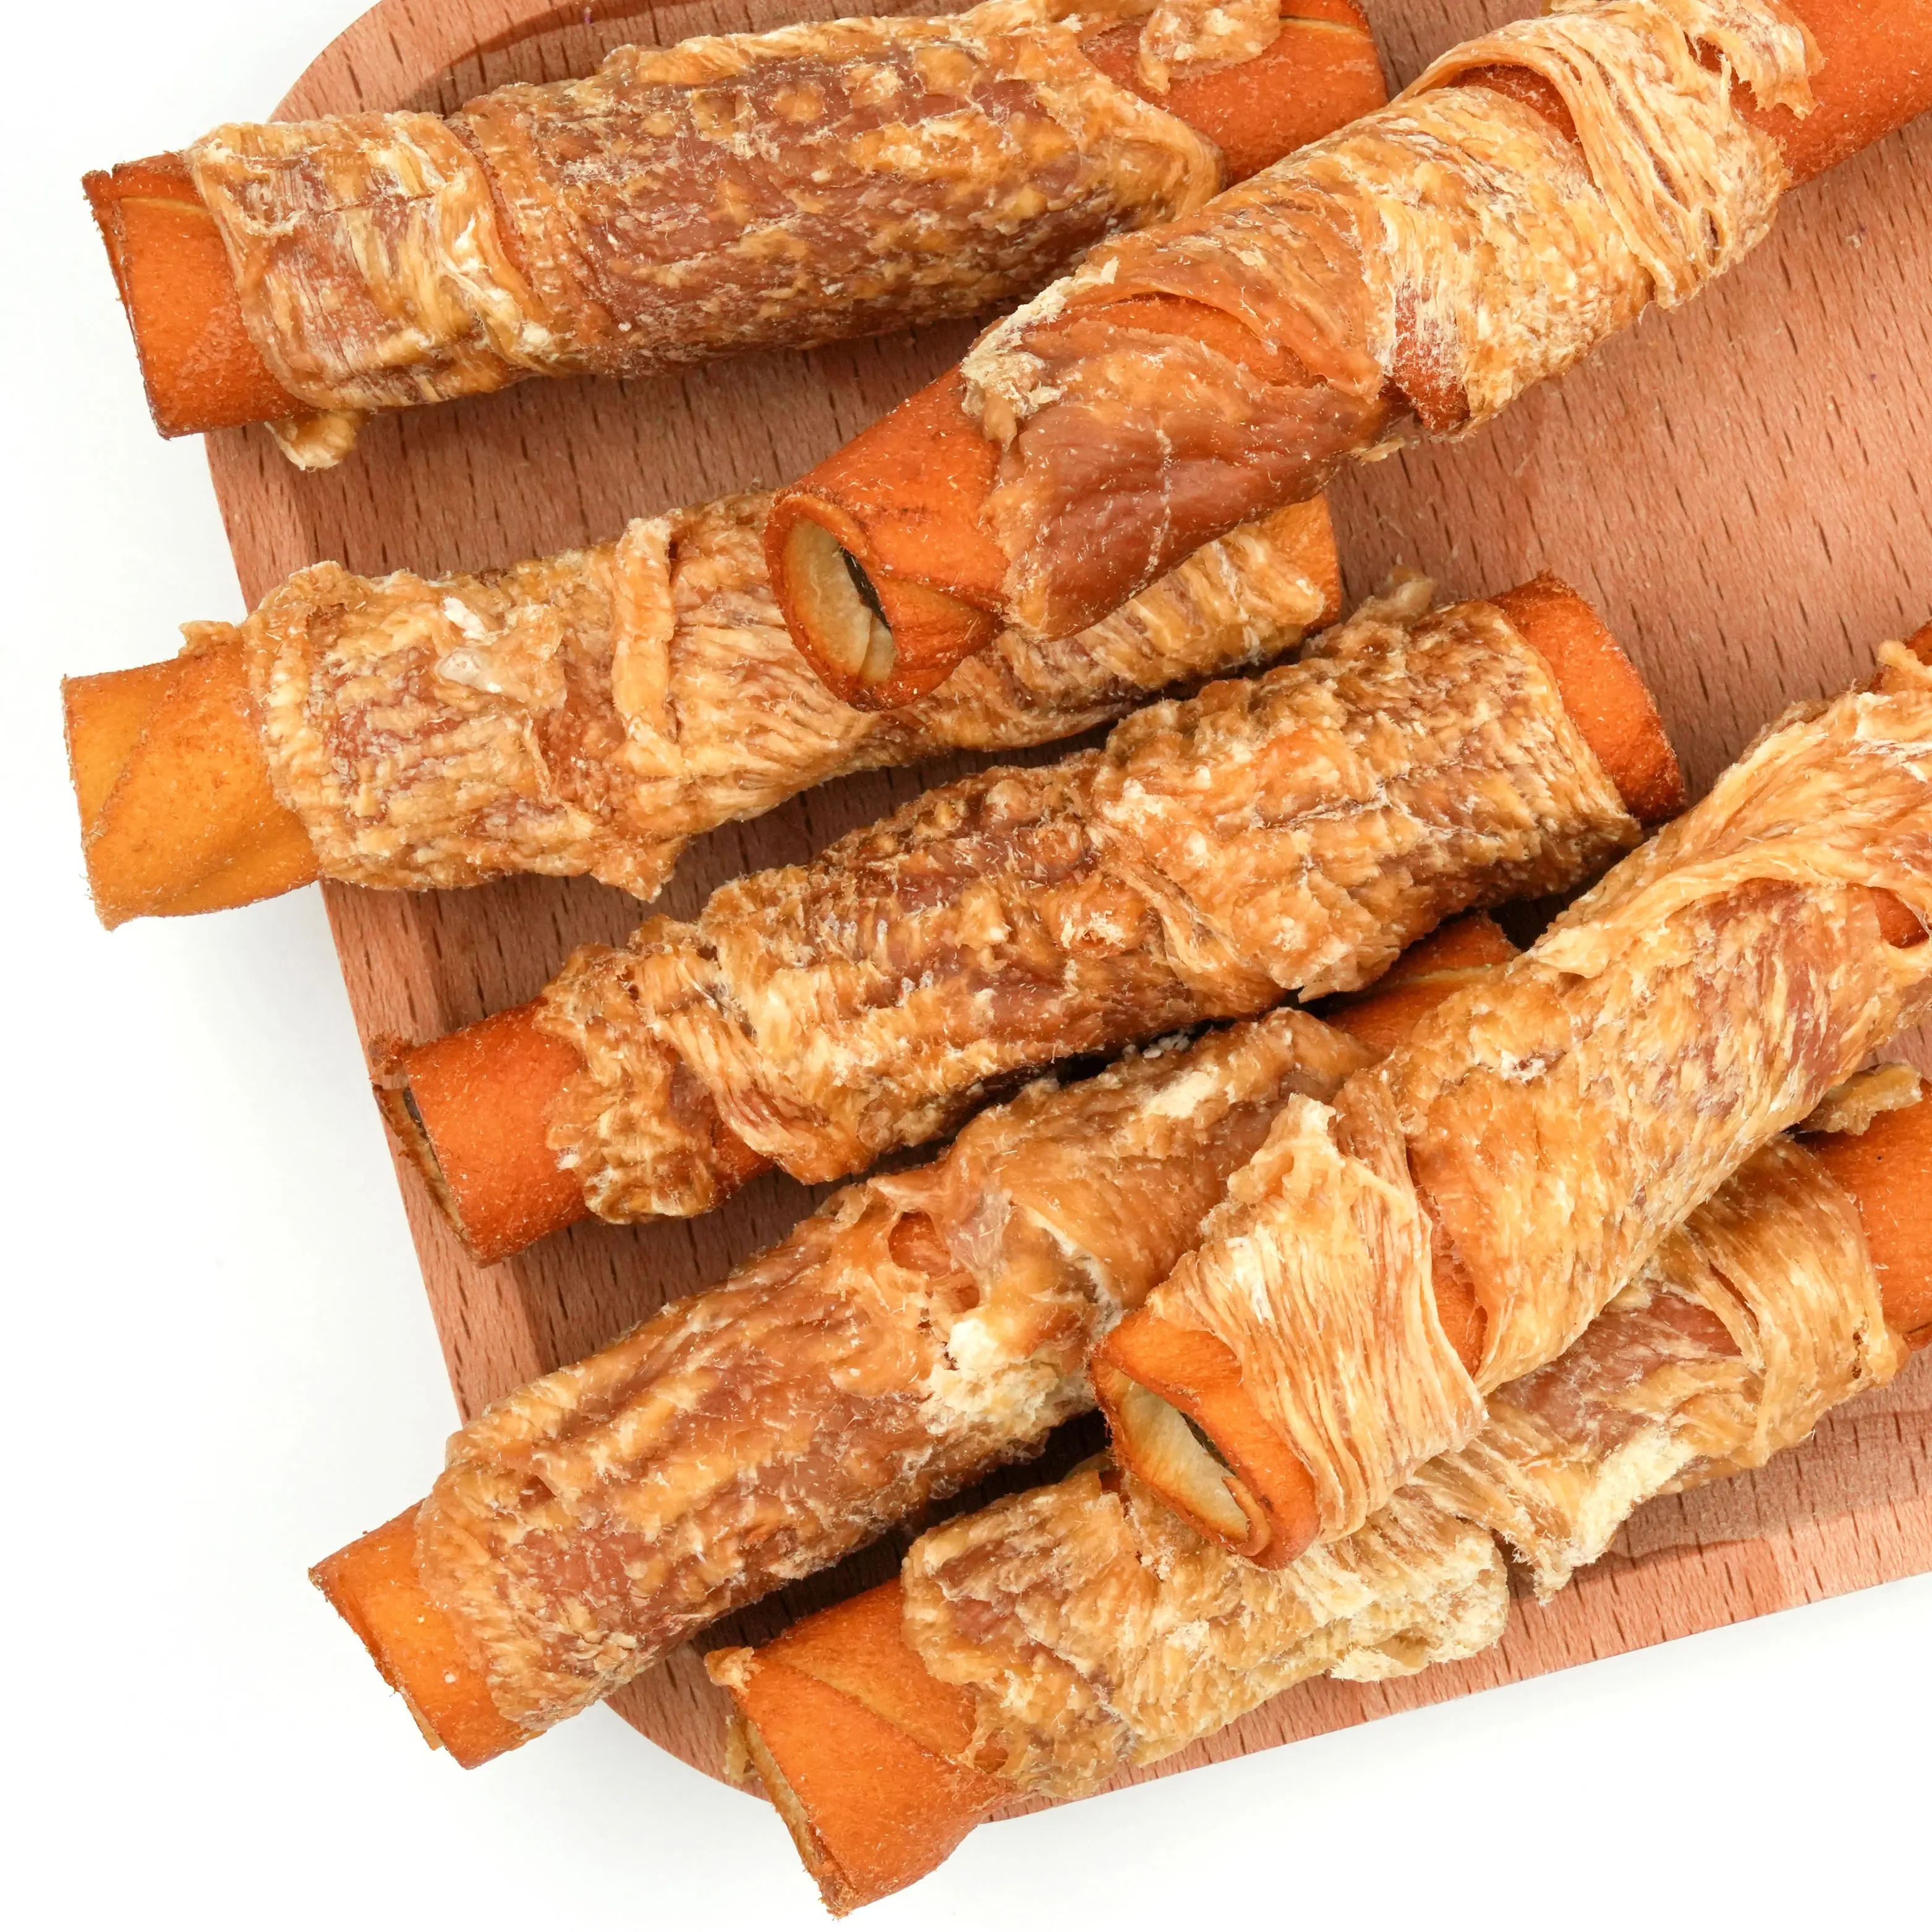 OEM ODM penjualan paling laris gulungan Sandwich kulit sapi ayam daging alami makanan ringan kunyah hewan peliharaan